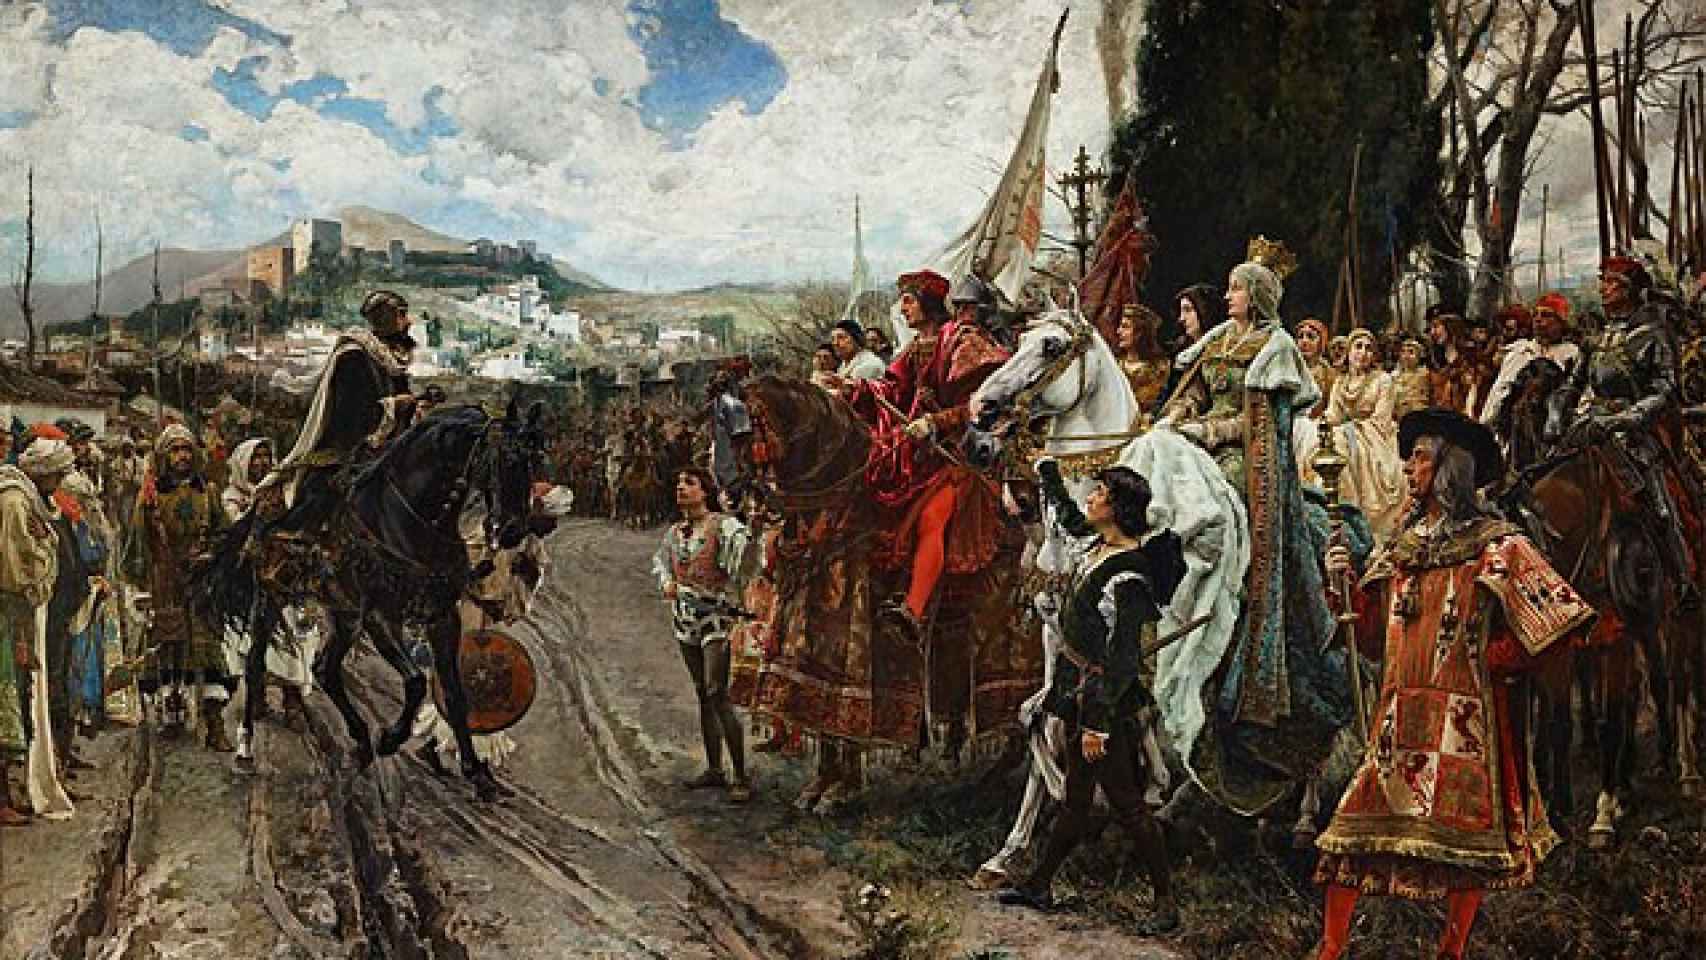 Los Reyes Católicos habitaron en Medina del Campo antes de unificar la península con la toma de Granada